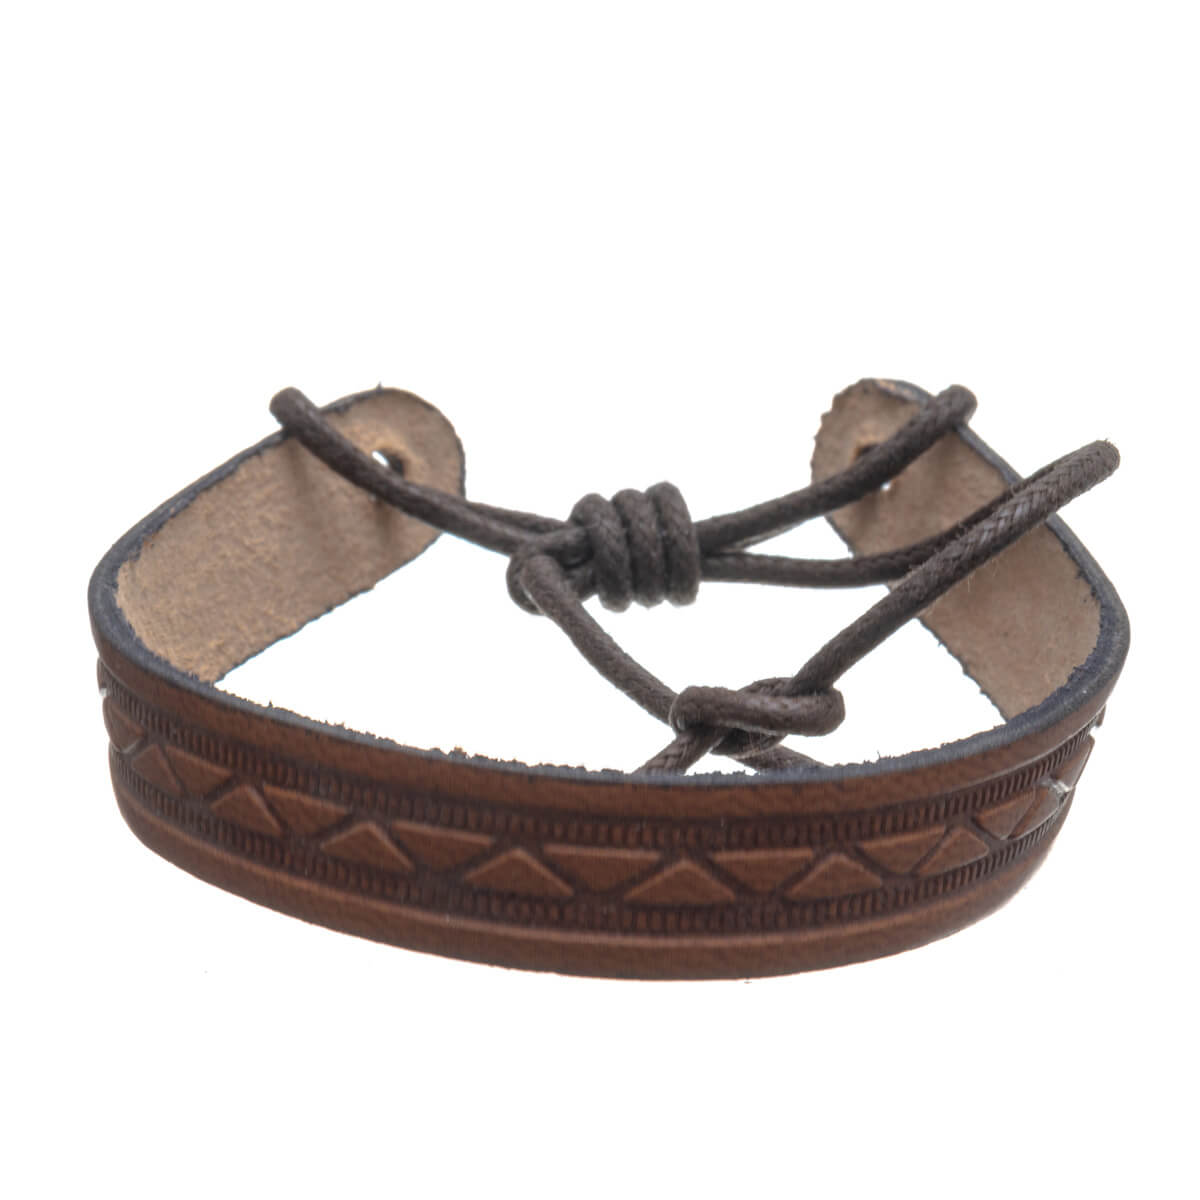 Adjustable textured leatherette bracelet